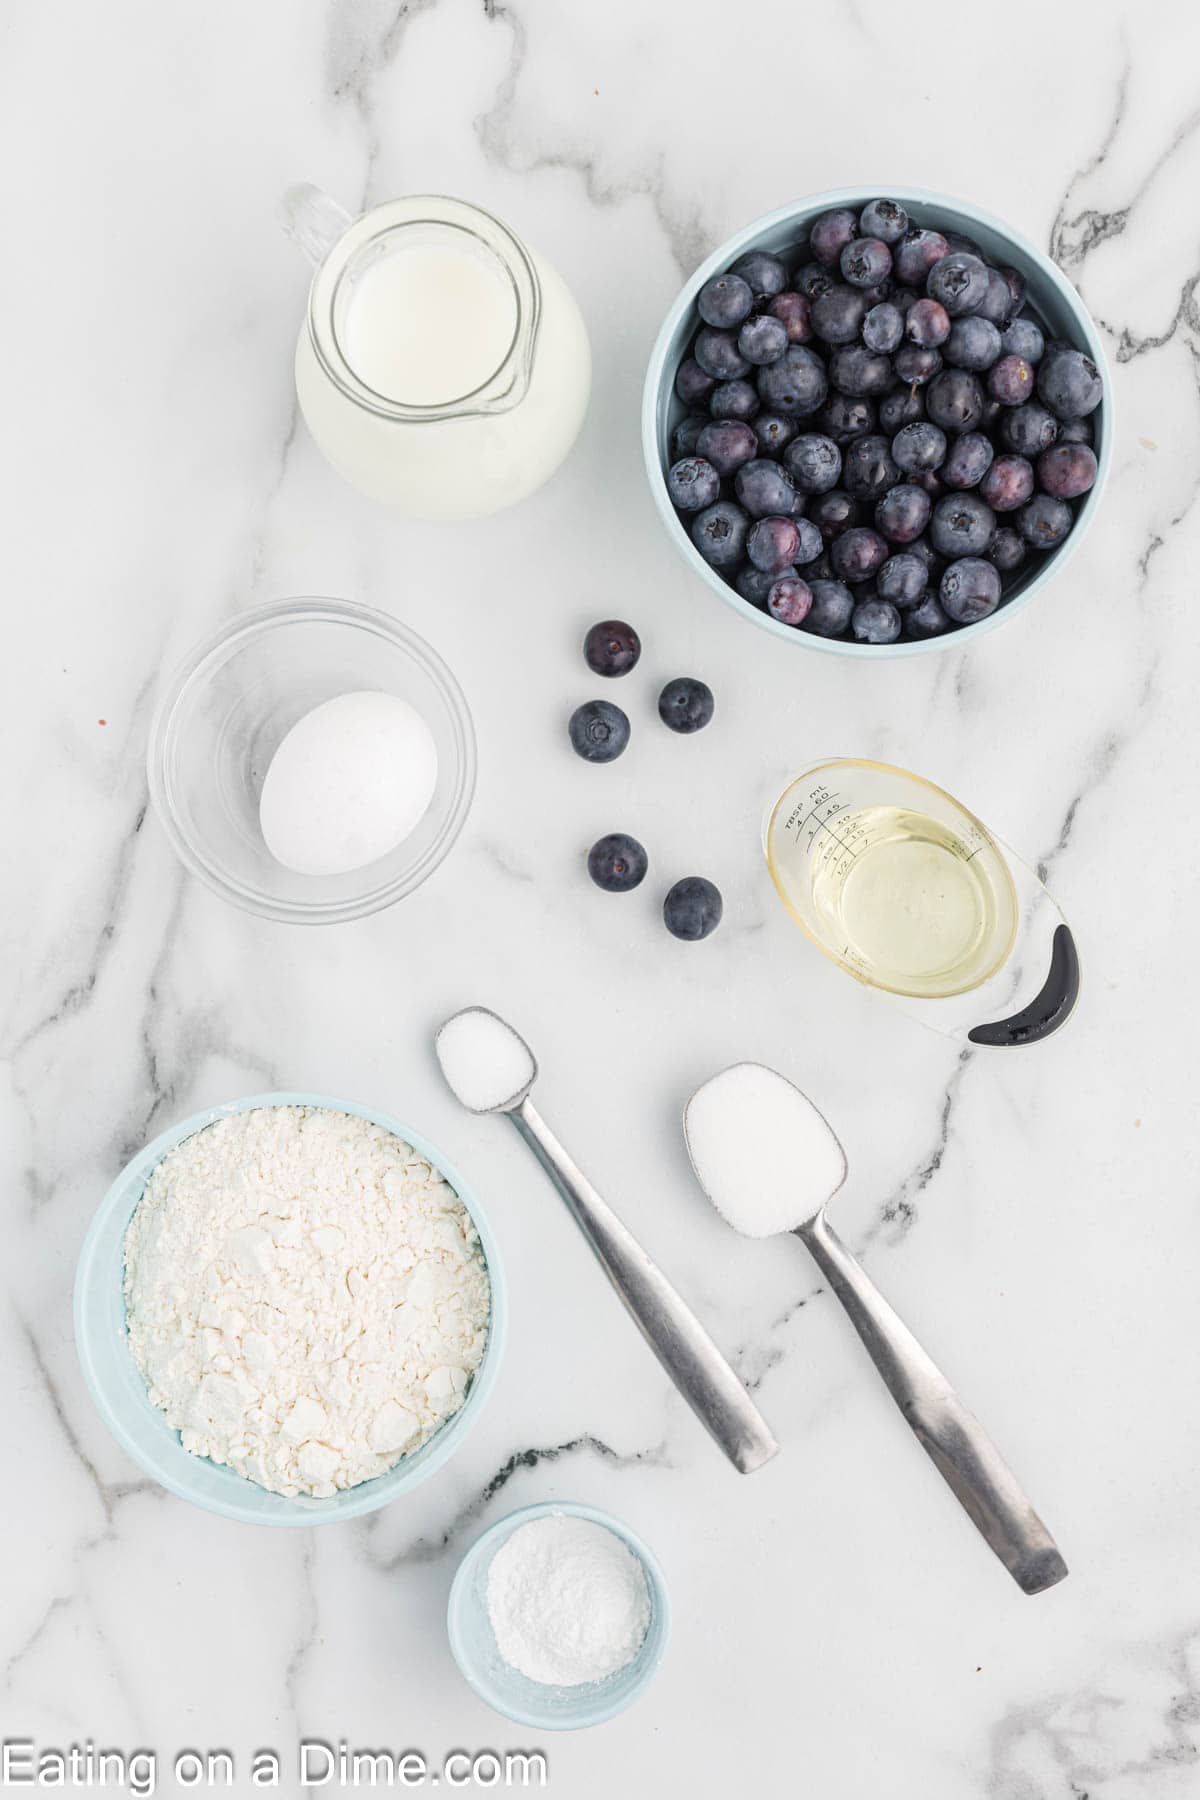 Ingredients - Flour, sugar, baking powder, salt, egg, milk, oil, blueberries